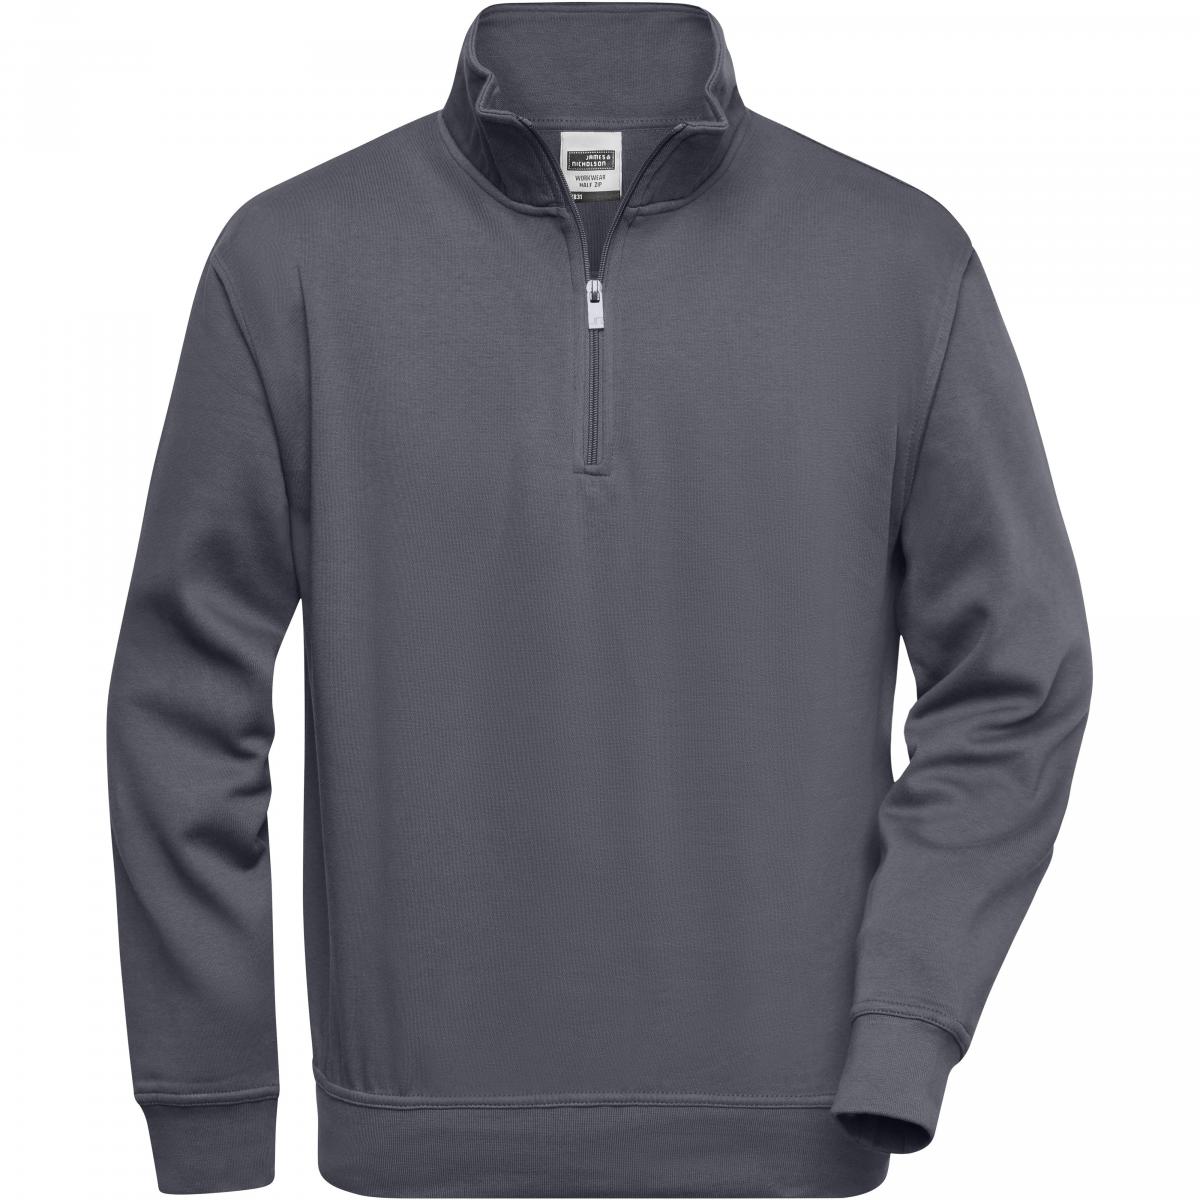 Hersteller: James+Nicholson Herstellernummer: JN831 Artikelbezeichnung: Workwear Half Zip Sweatshirt +Waschbar bis 60 °C Farbe: Carbon